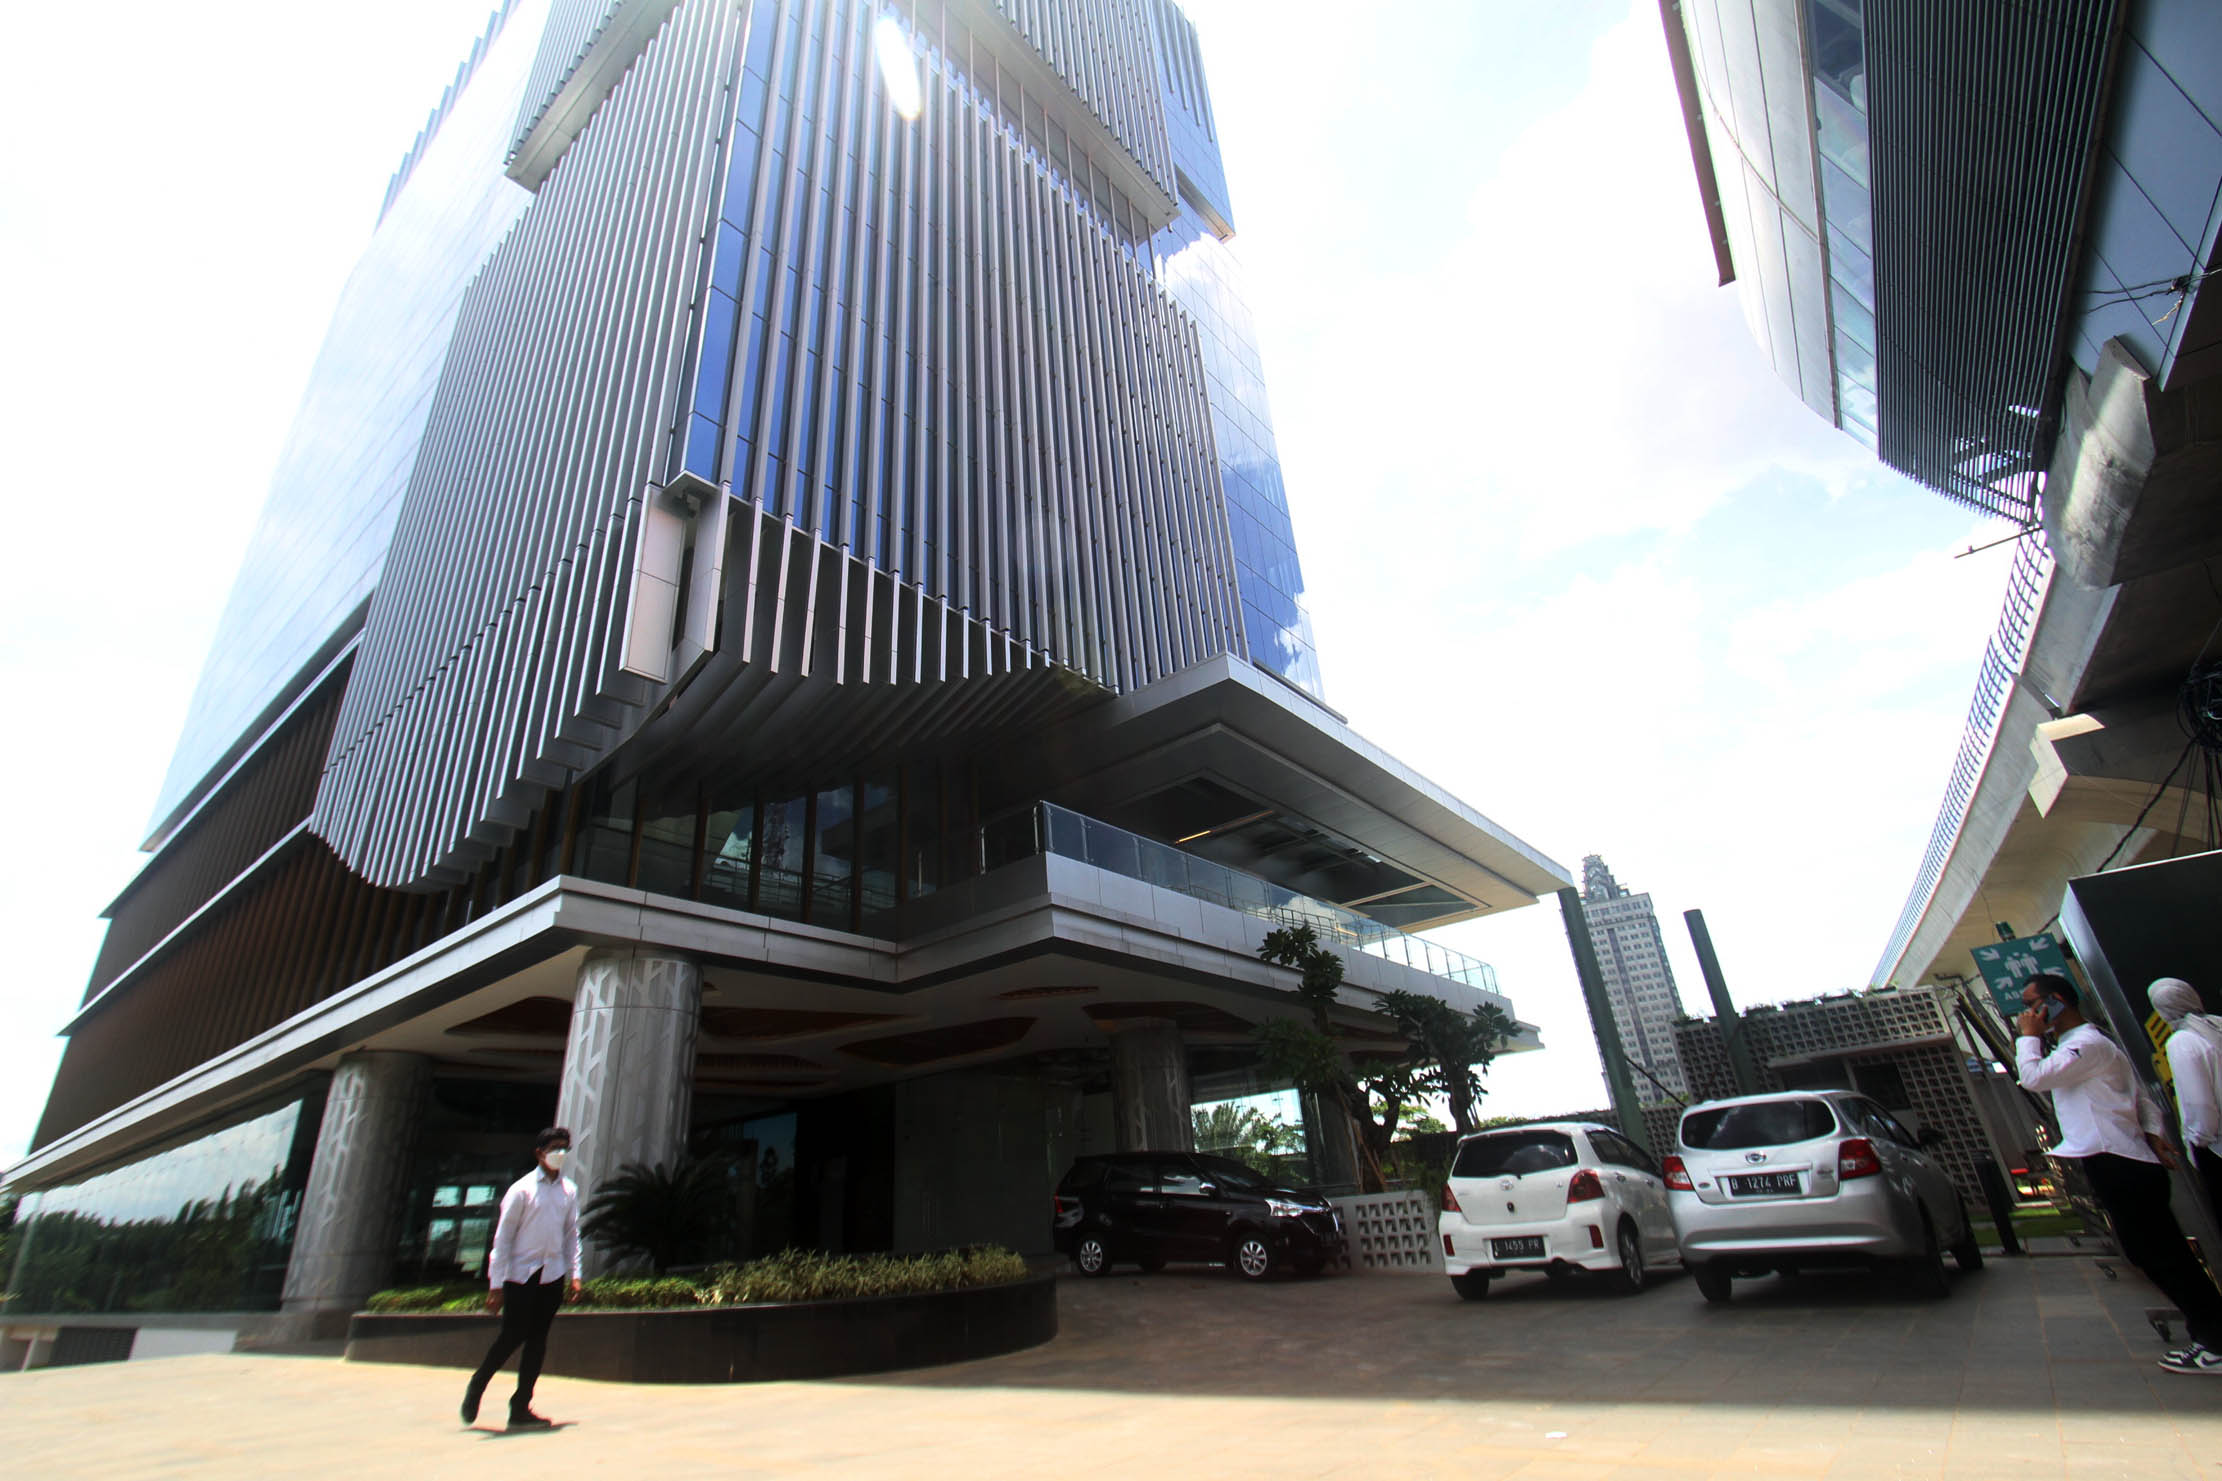 Pekerja berjalan di depan gedung perkantoran MTH 27 Office Suite di Jakarta. Gedung perkantoran milik Adhi Commuter Properti di Jalan MT Haryono, Cawang tersebut berkonsep Transit Oriented Development (TOD) dengan 13 lantai yang terdiri atas 11 lantai perkantoran dan dua lantai area komersial serta mengusung green building,Senin 24 Januari 2022. Foto : Panji Asmoro/TrenAsia